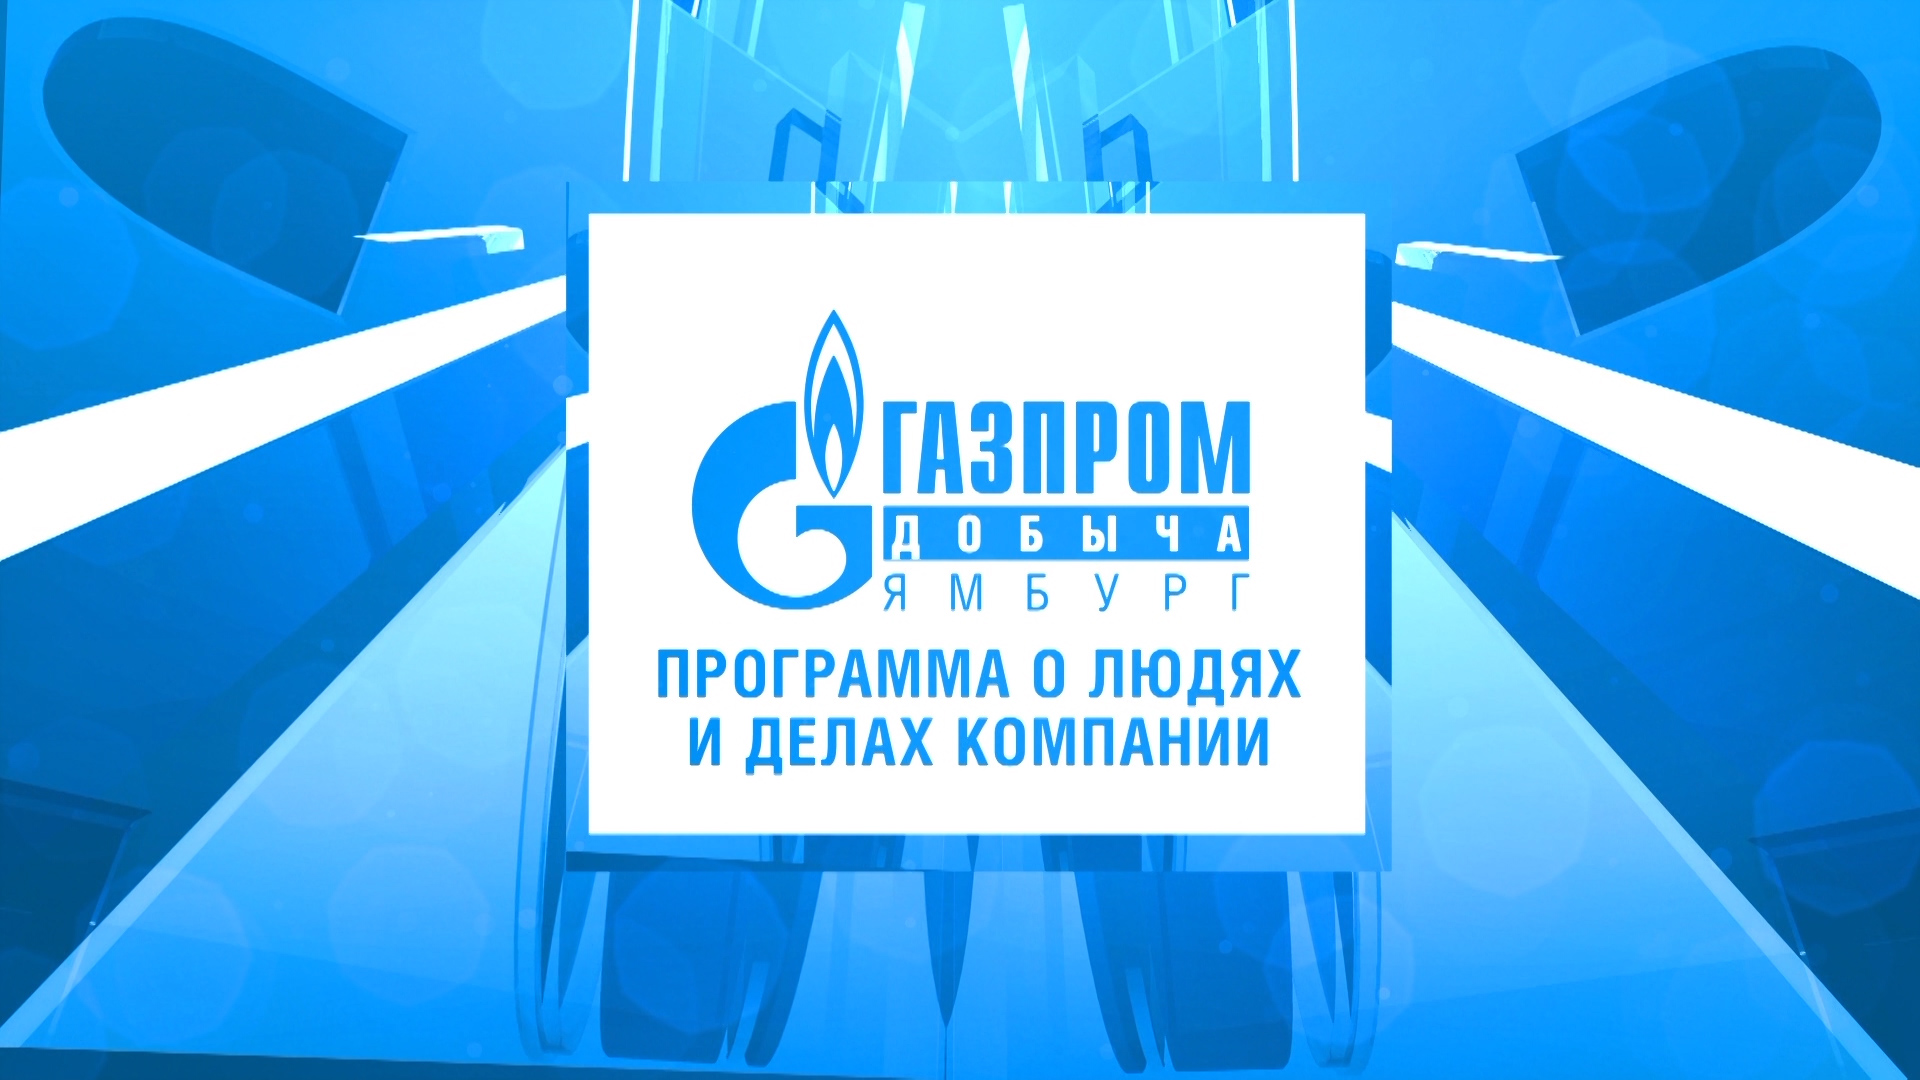 24 октября / Программа о людях и делах компании ООО "Газпром добыча Ямбург"